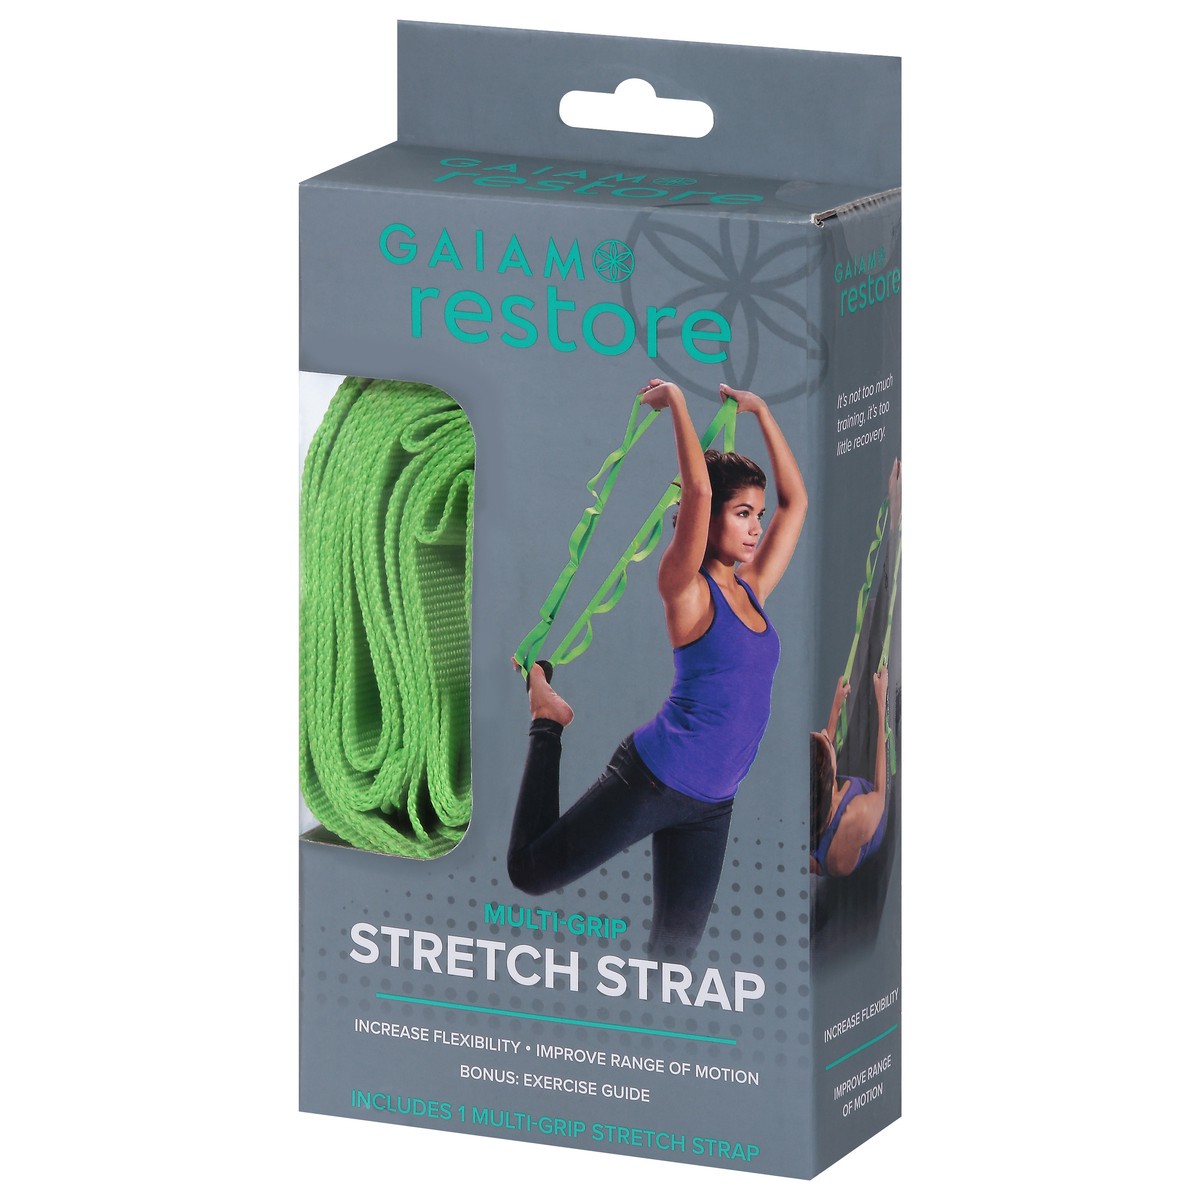 Restore Multi-Grip Stretch Strap